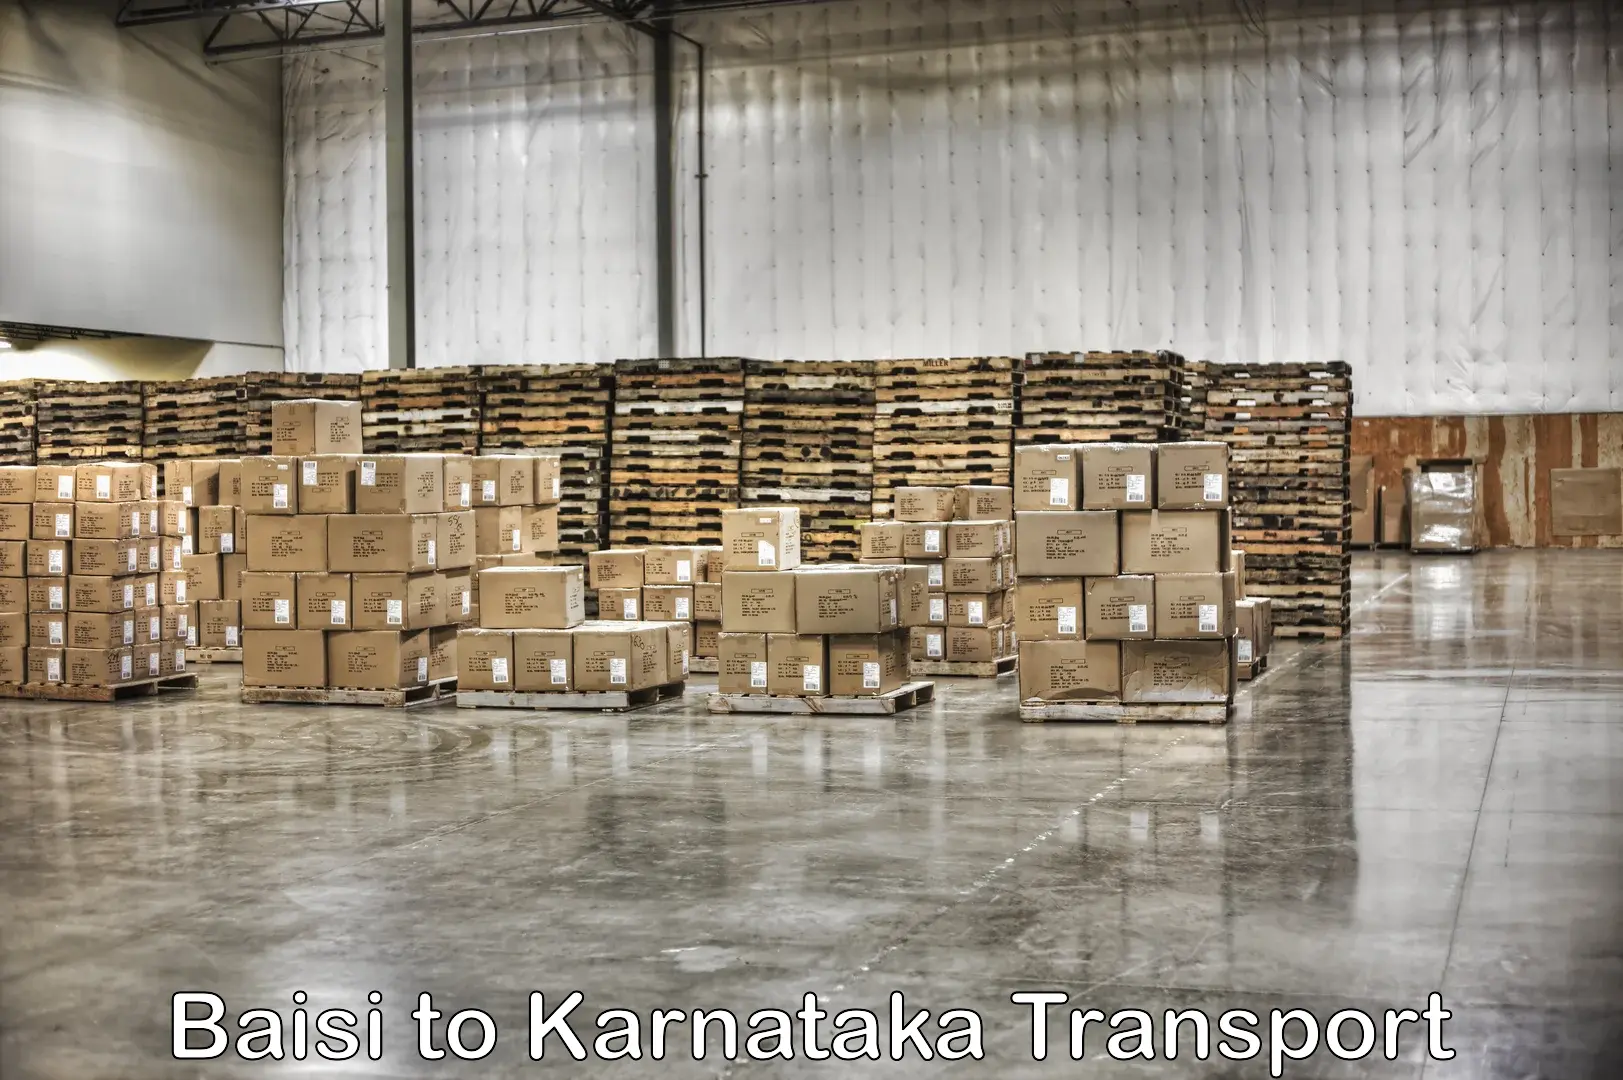 Express transport services Baisi to Karnataka